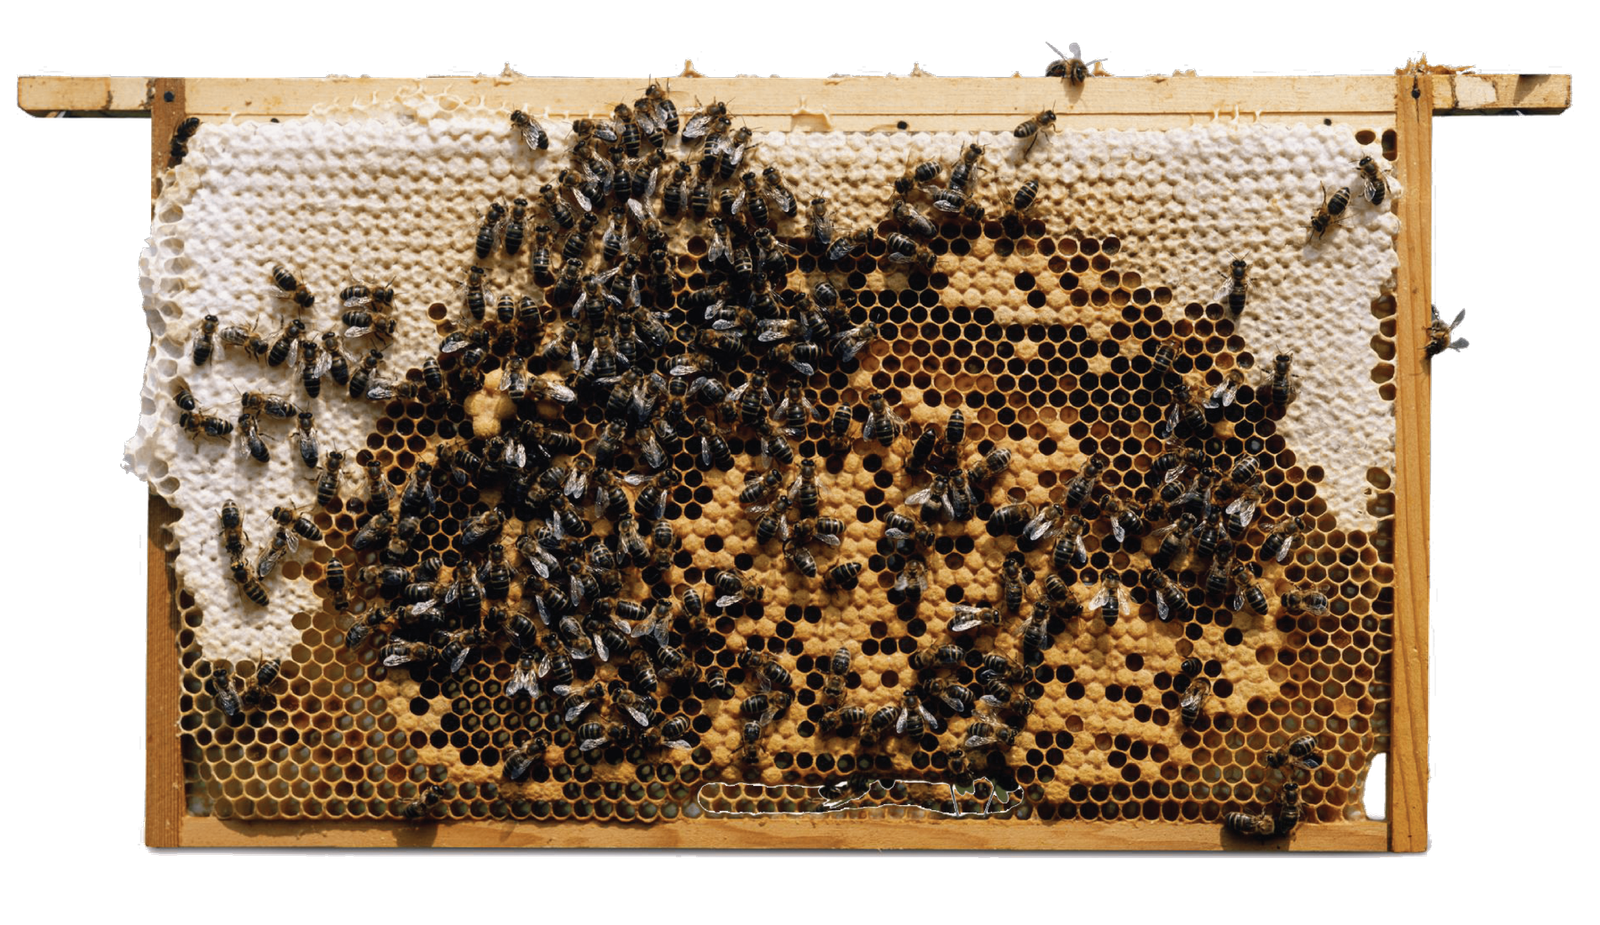 Apis Melifera Bee colony@600x 8